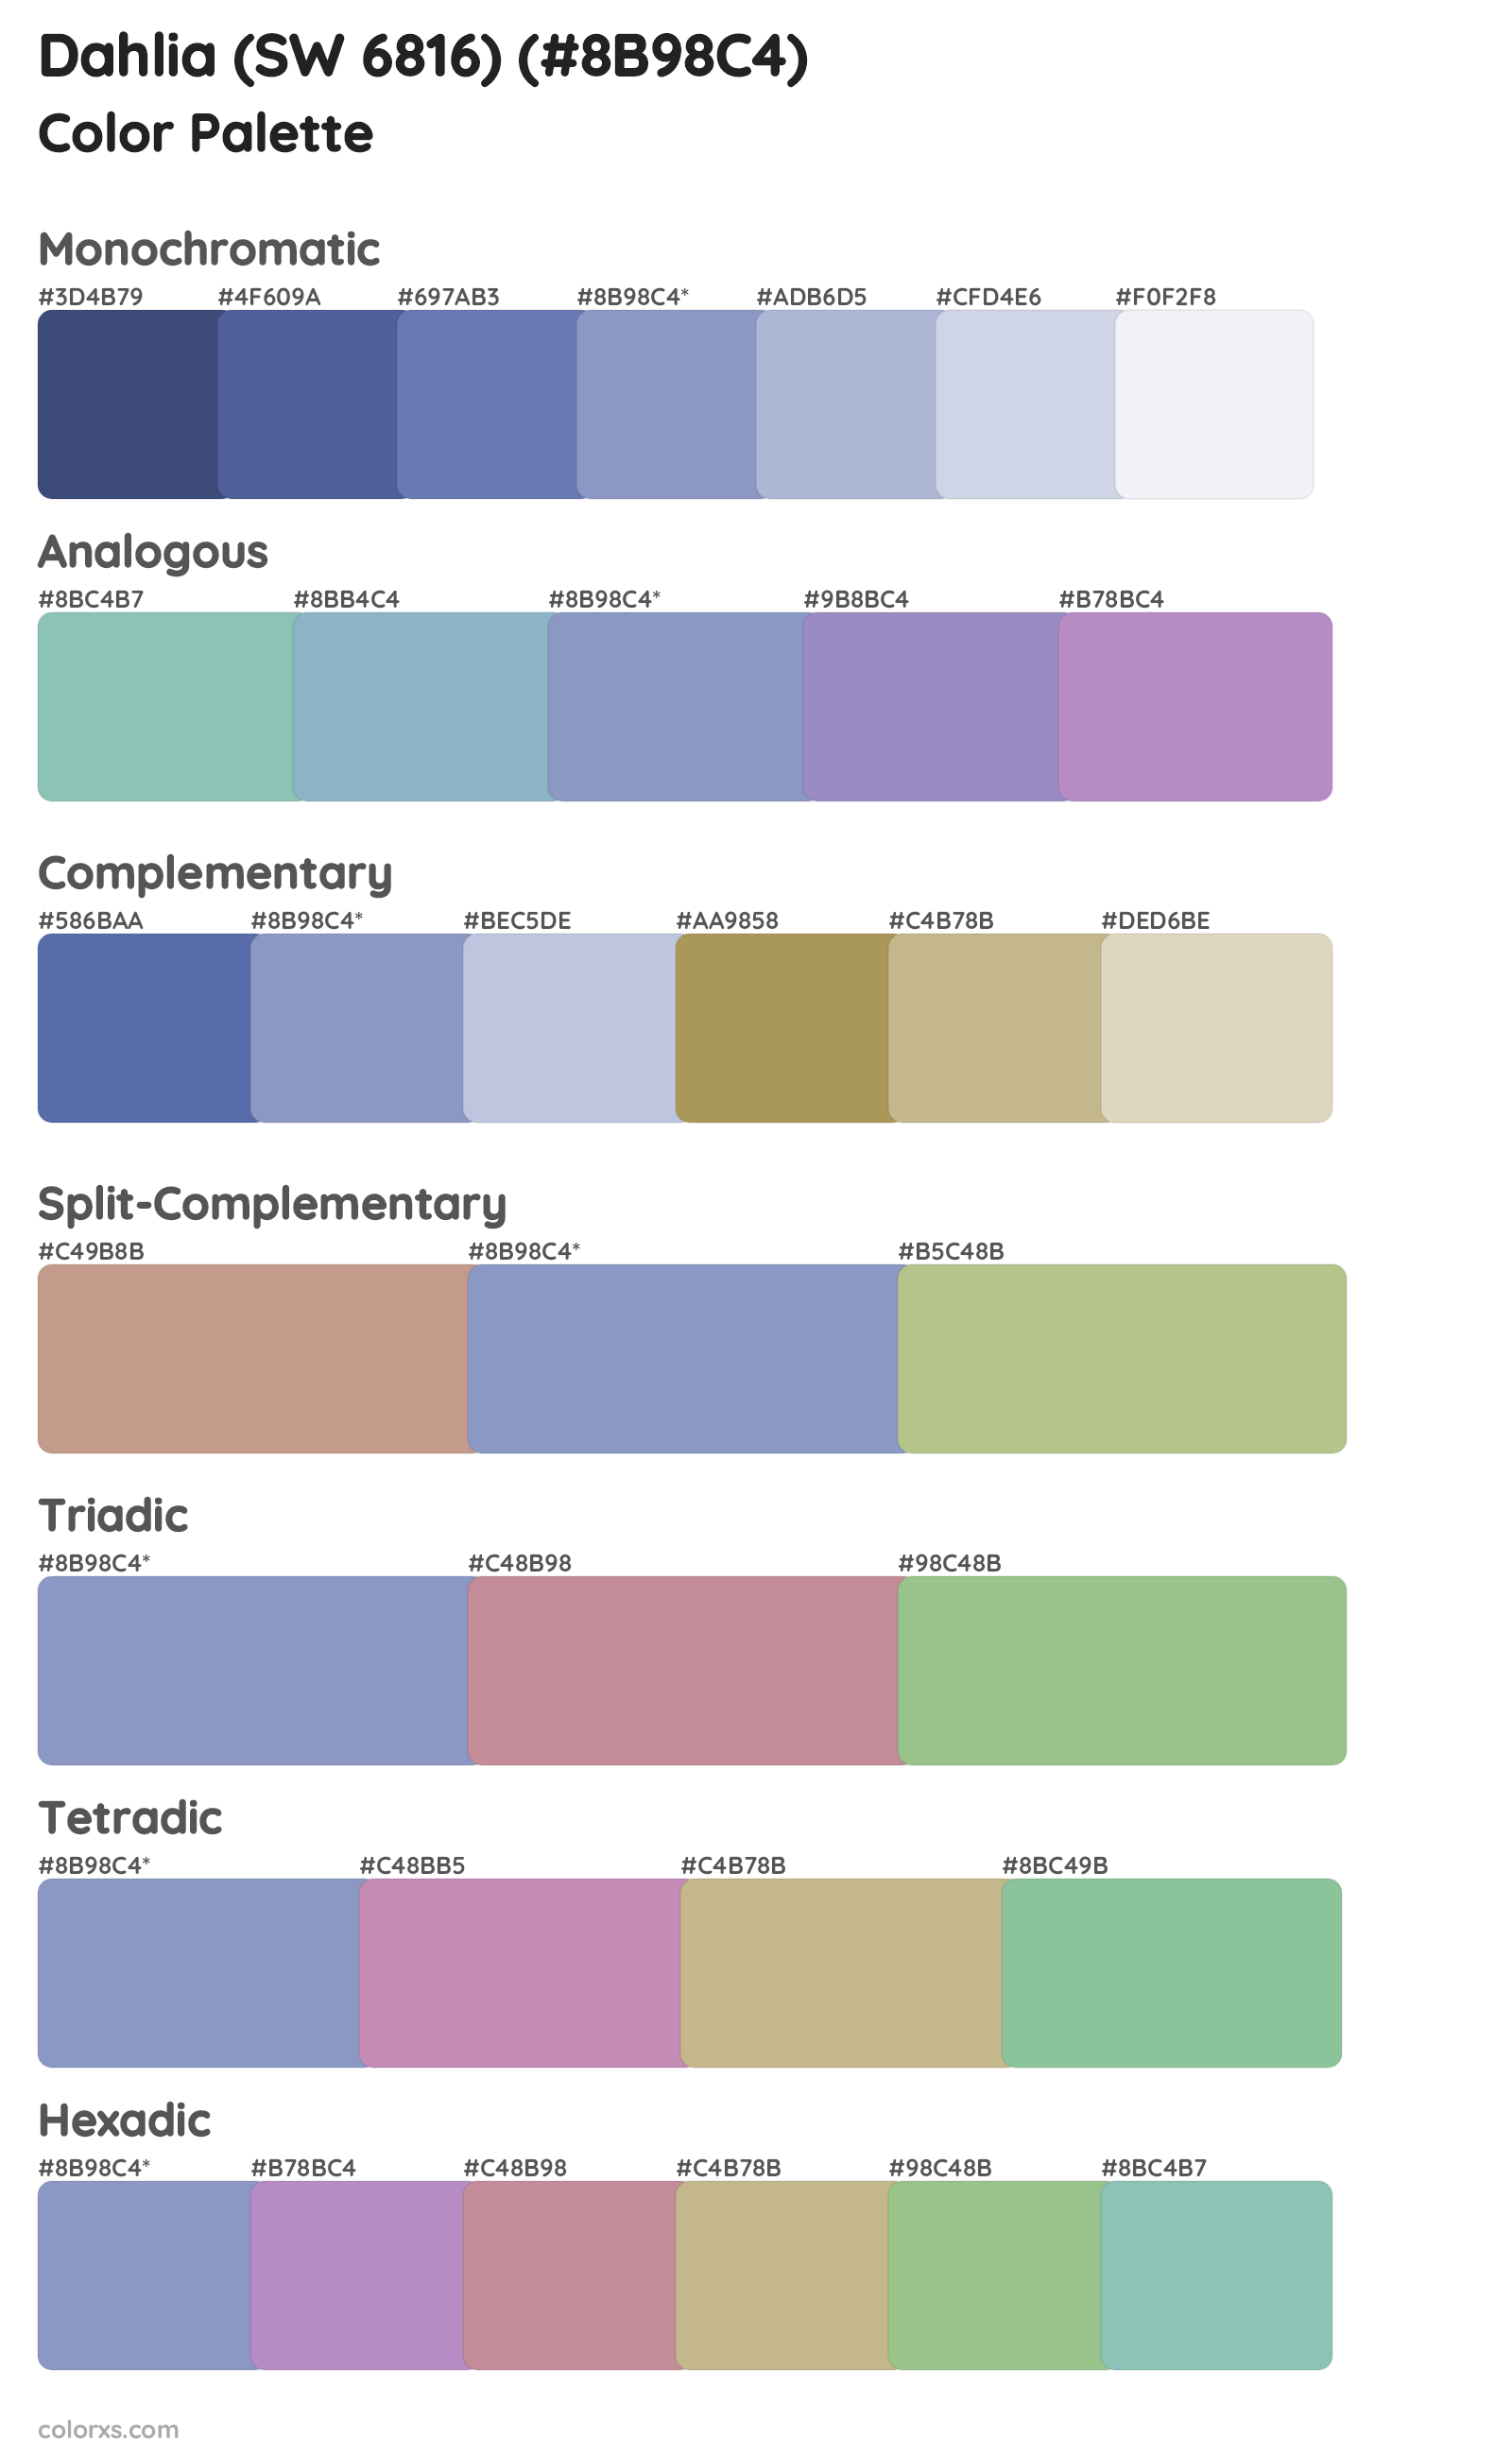 Dahlia (SW 6816) Color Scheme Palettes